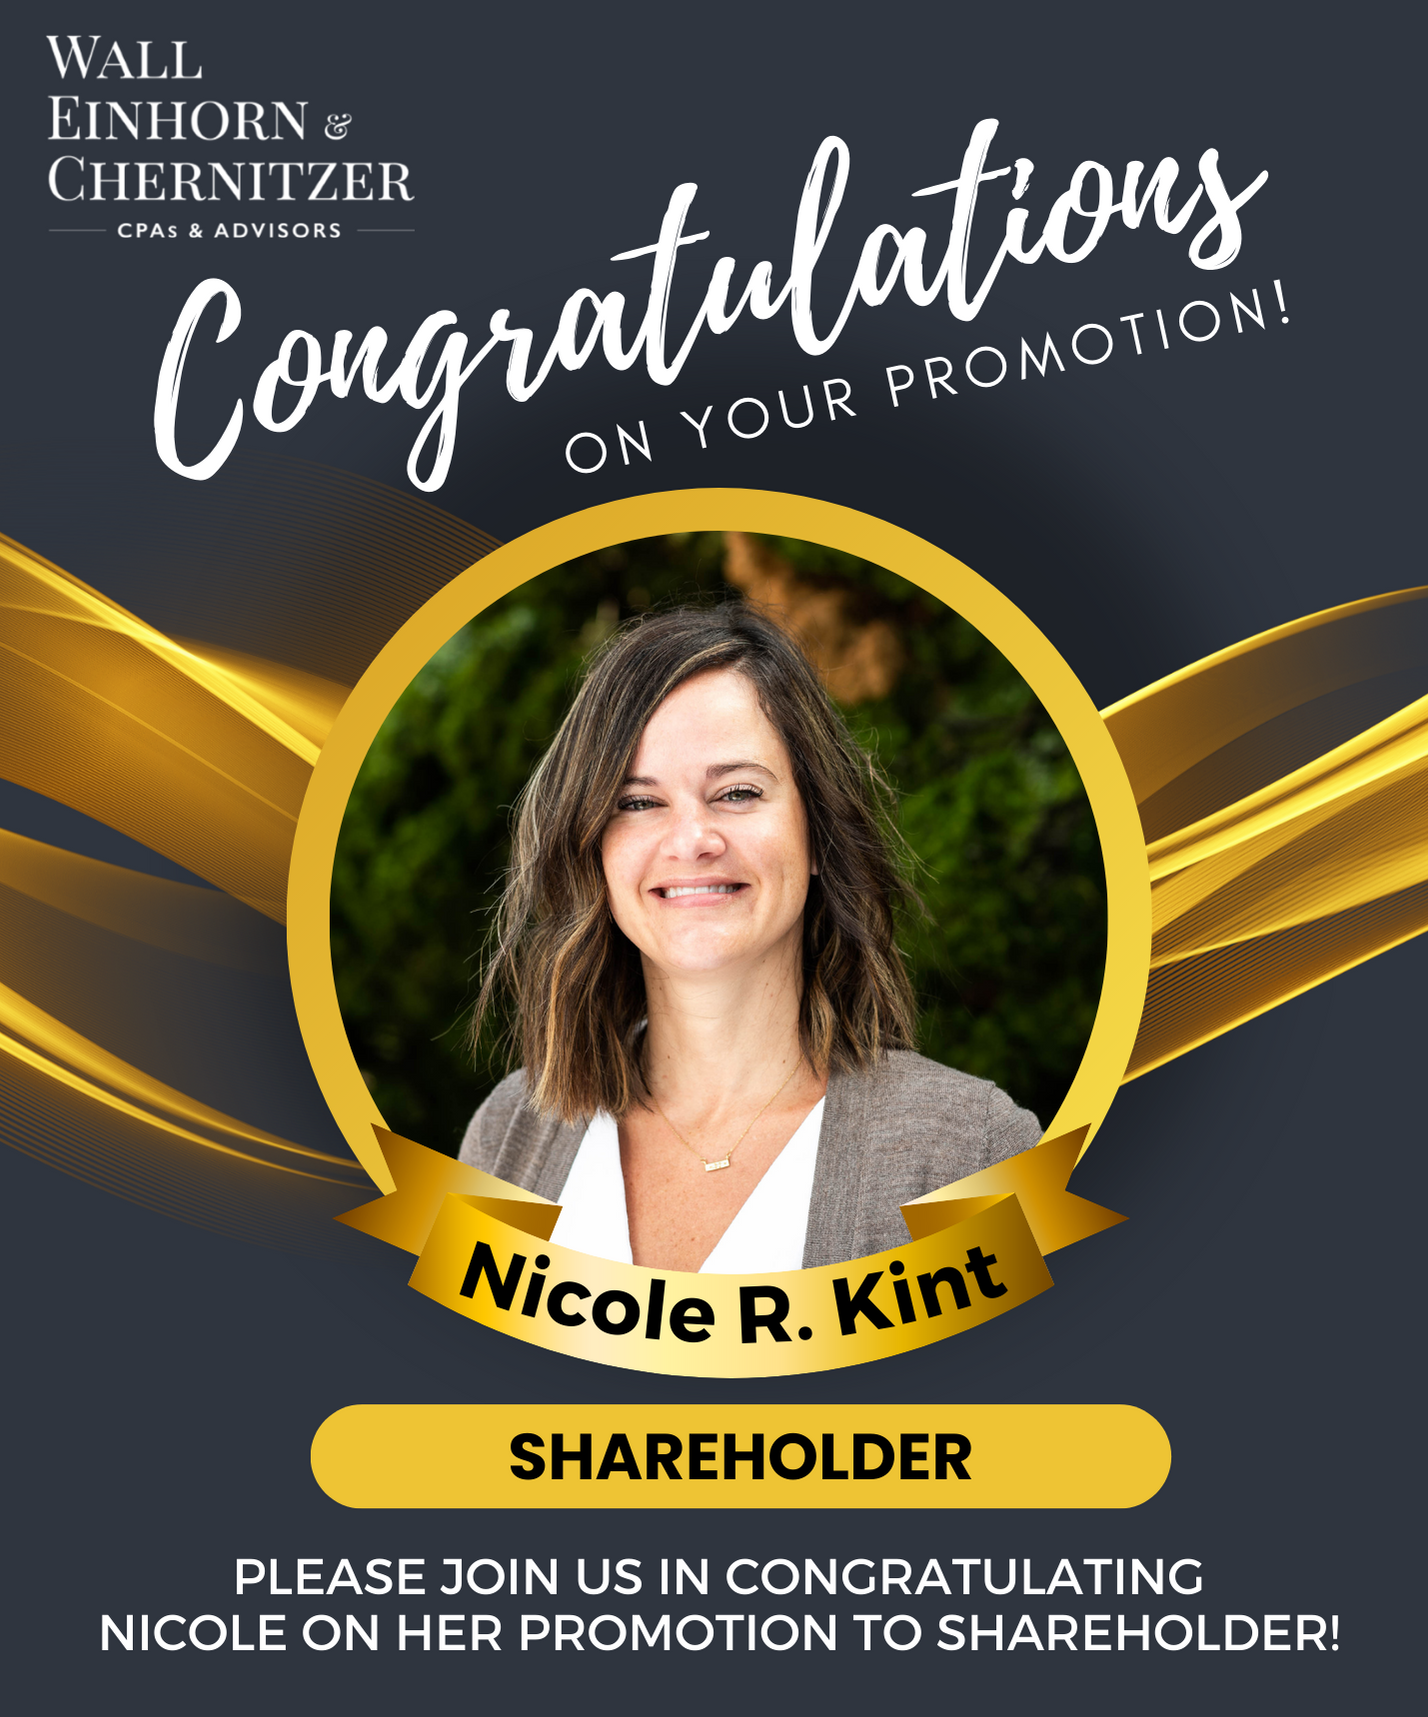 WEC Announces Promotion of Nicole R. Kint, Partner